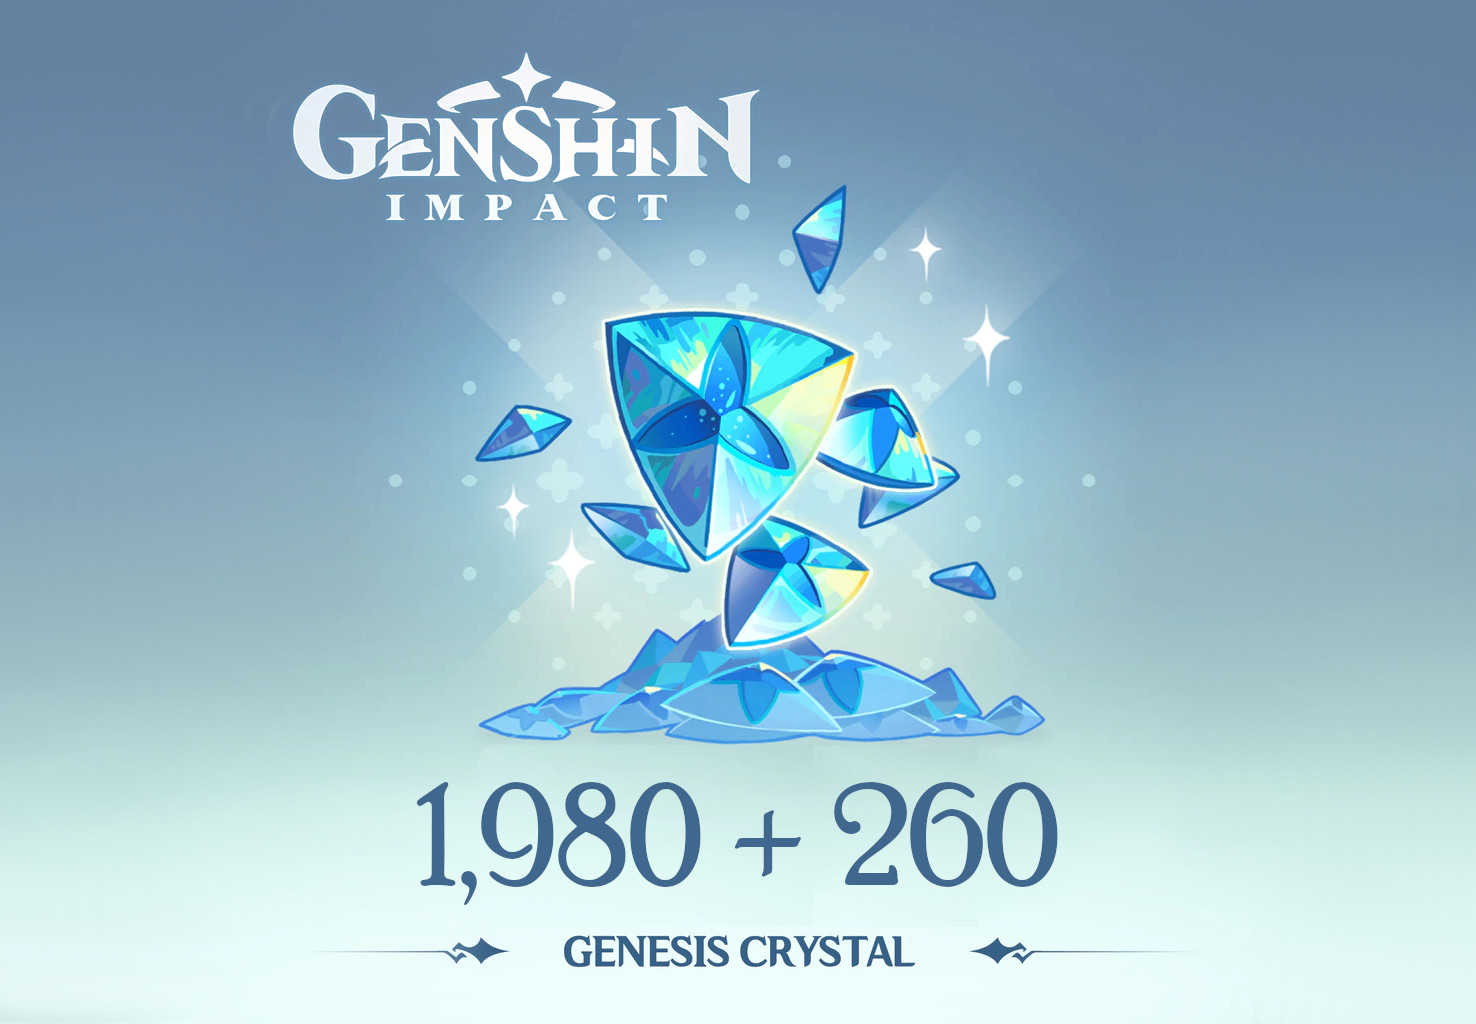 [$ 33.9] Genshin Impact - 1,980 + 260 Genesis Crystals Reidos Voucher